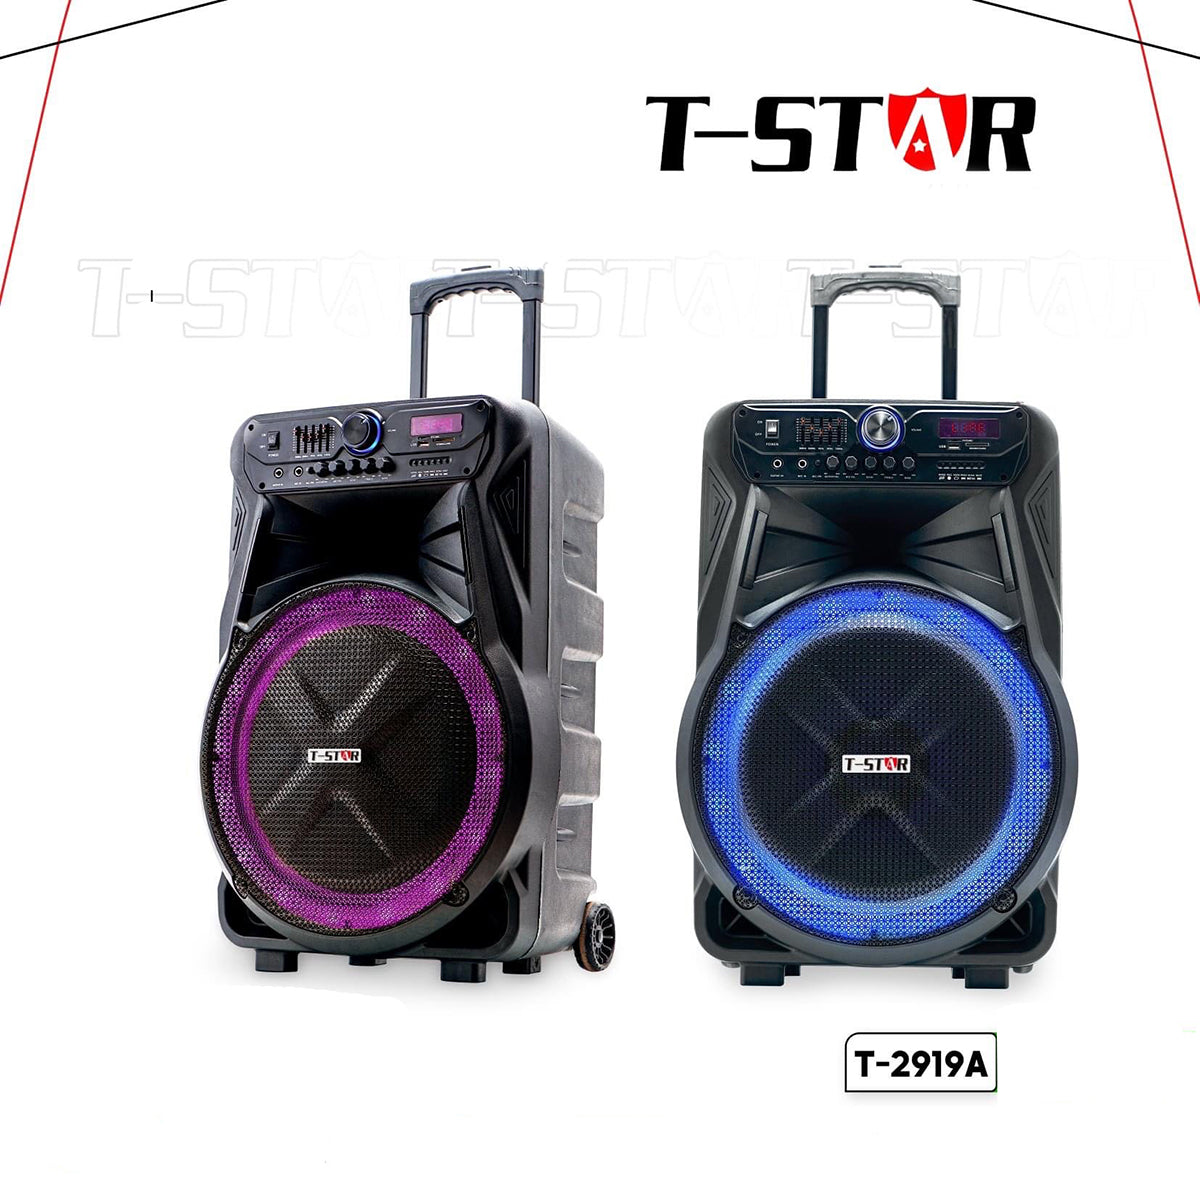 T-2919A 15″ FM USB Wireless Speaker